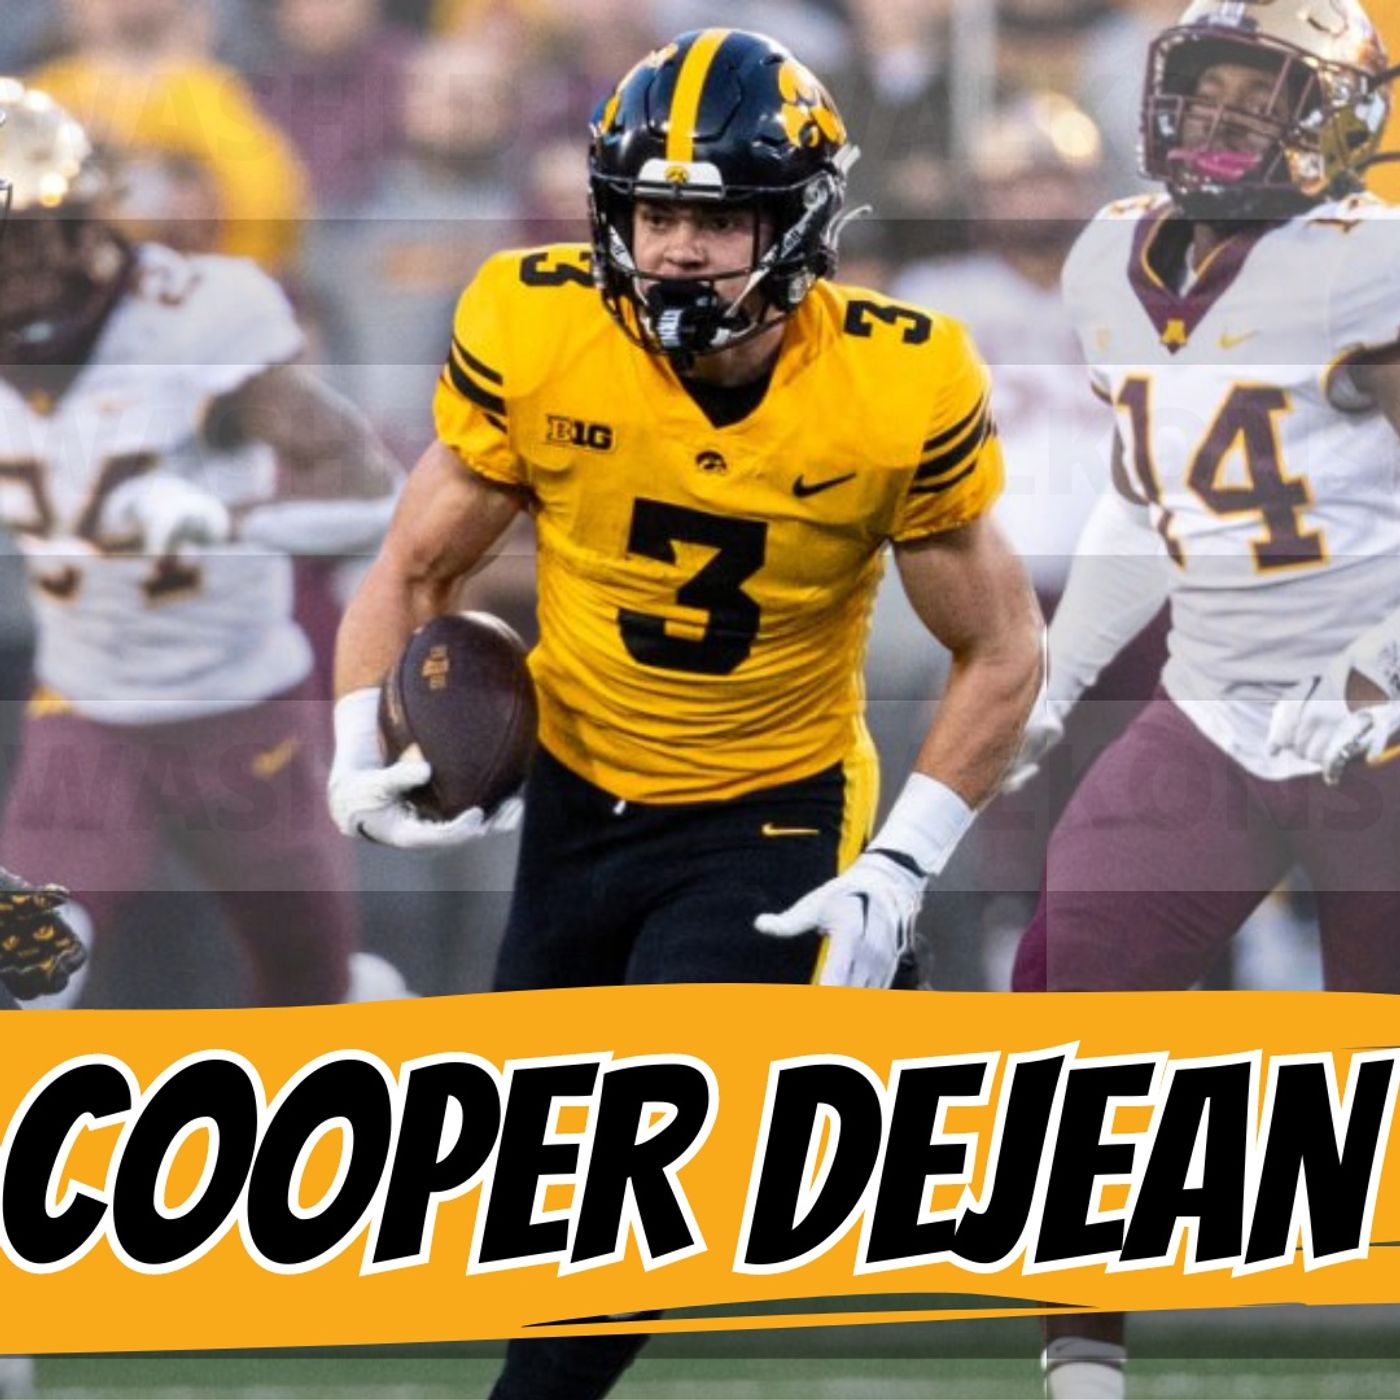 Cooper Dejean | WUW 499